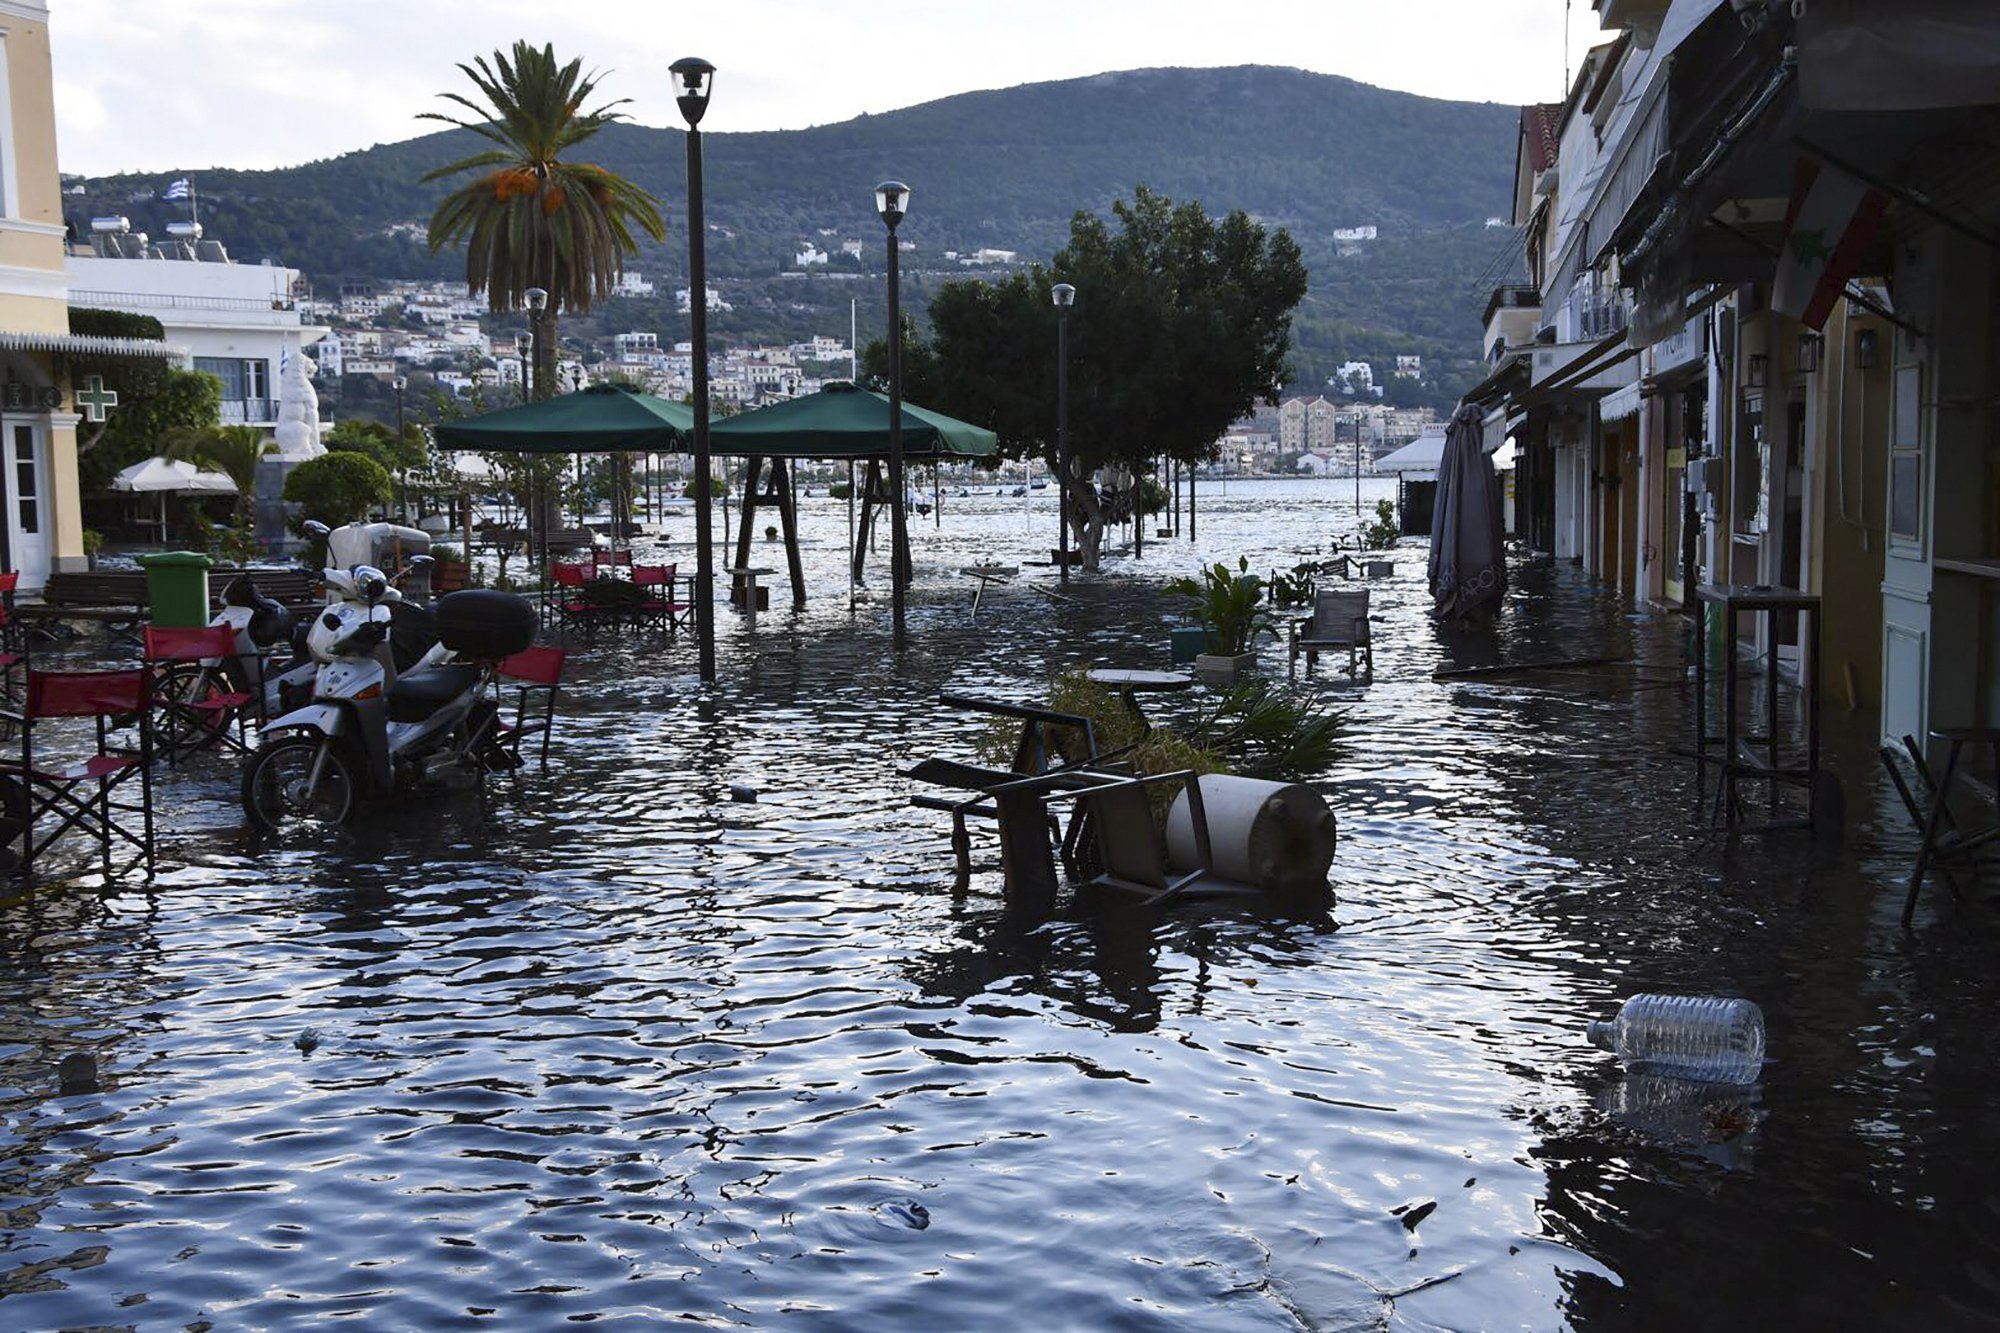 Death toll reaches 39 in quake that hit Turkey, Greek island AP News